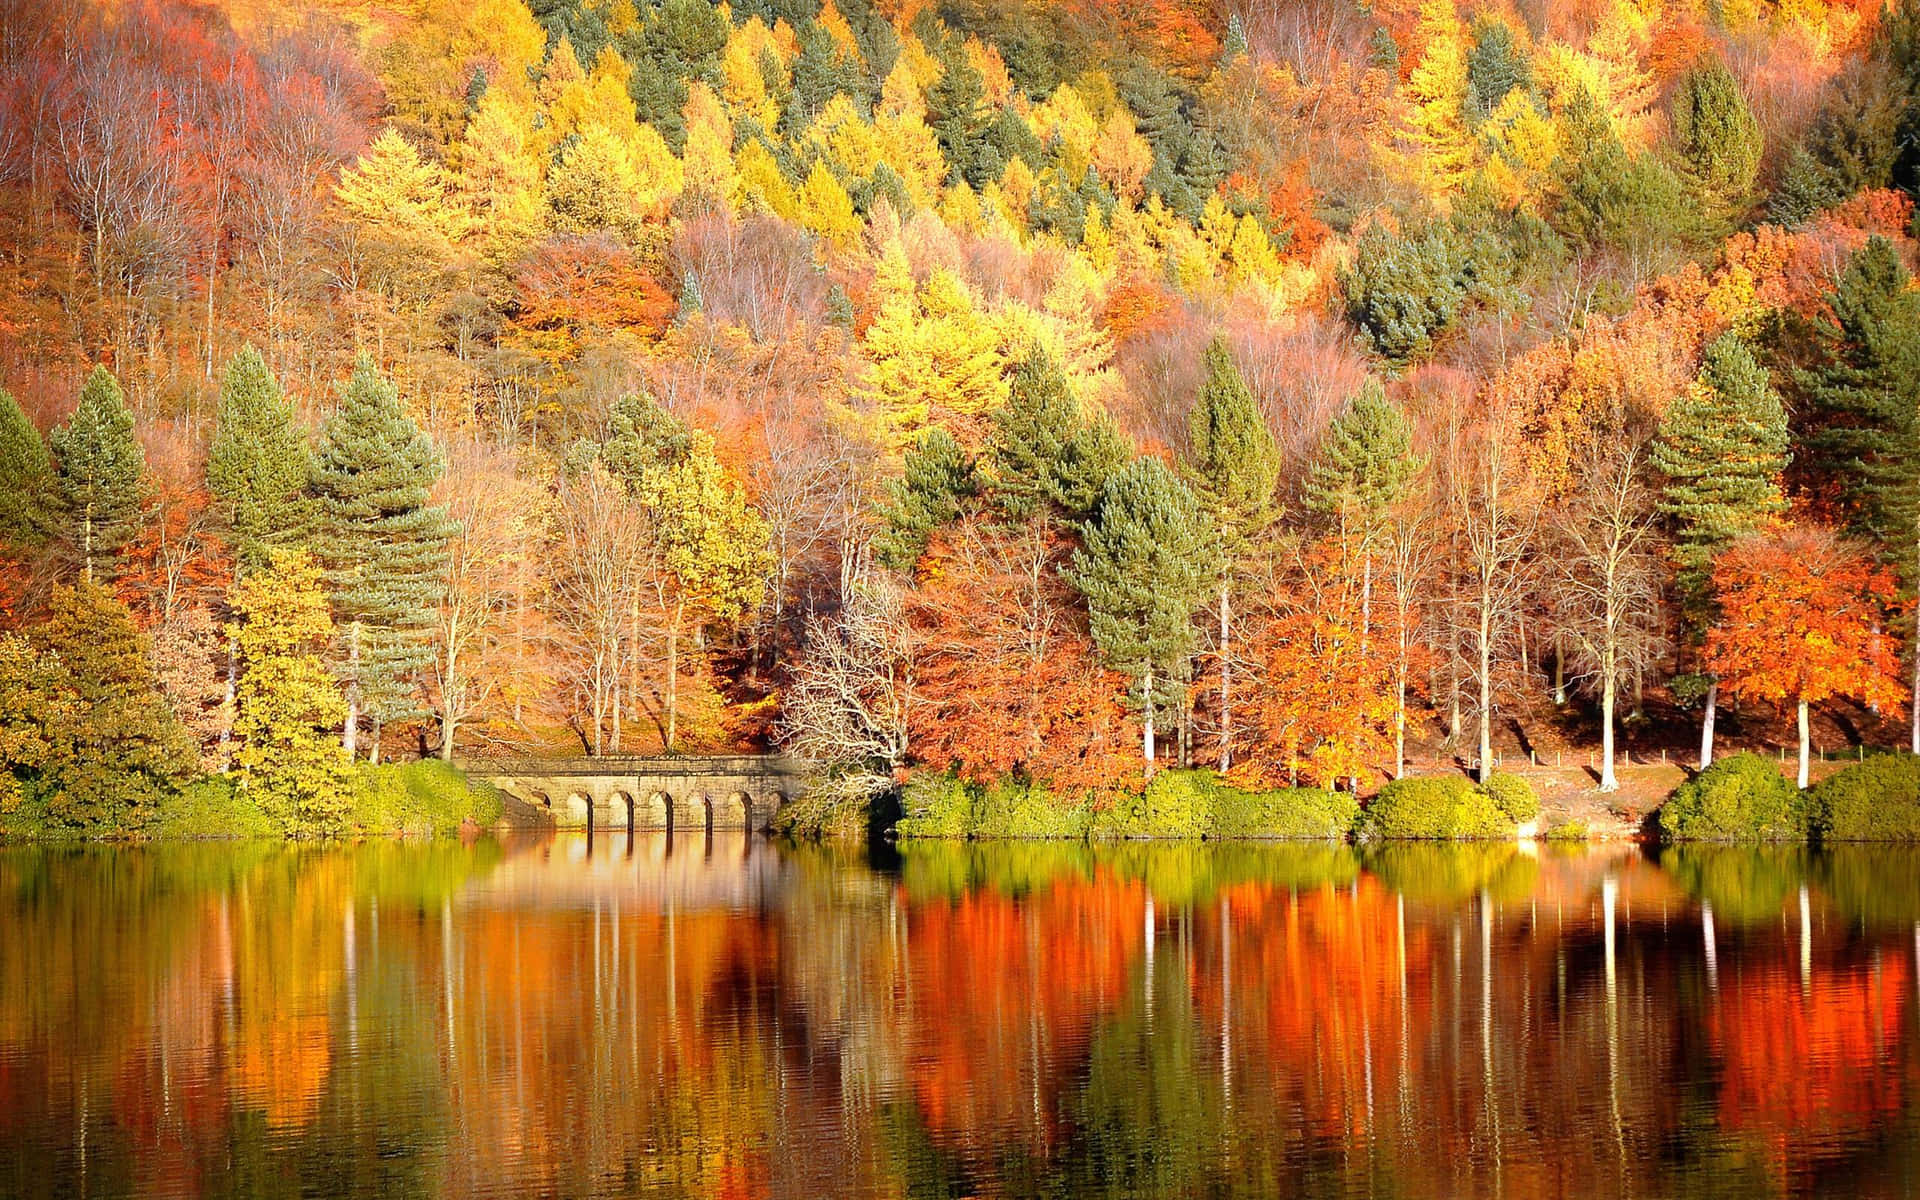 Dienatur In Ihrer Schönsten Form - Eine Herbstliche Landschaft Voller Wunderschöner Herbstfarben. Wallpaper